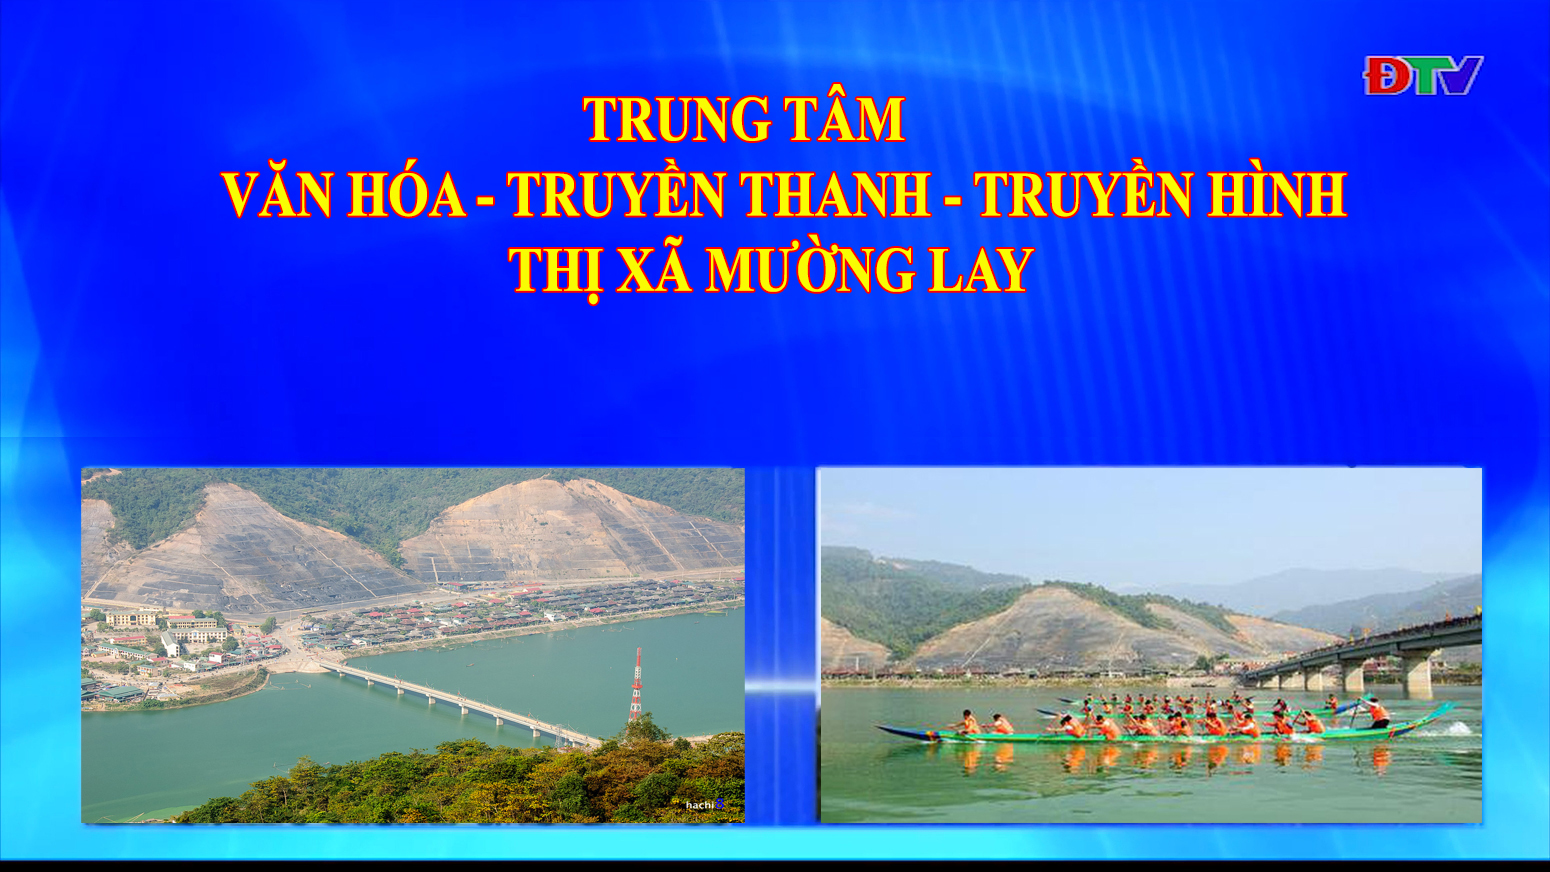 Trung tâm VH-TTTH thị xã Mường Lay (Ngày 18-2-2022)